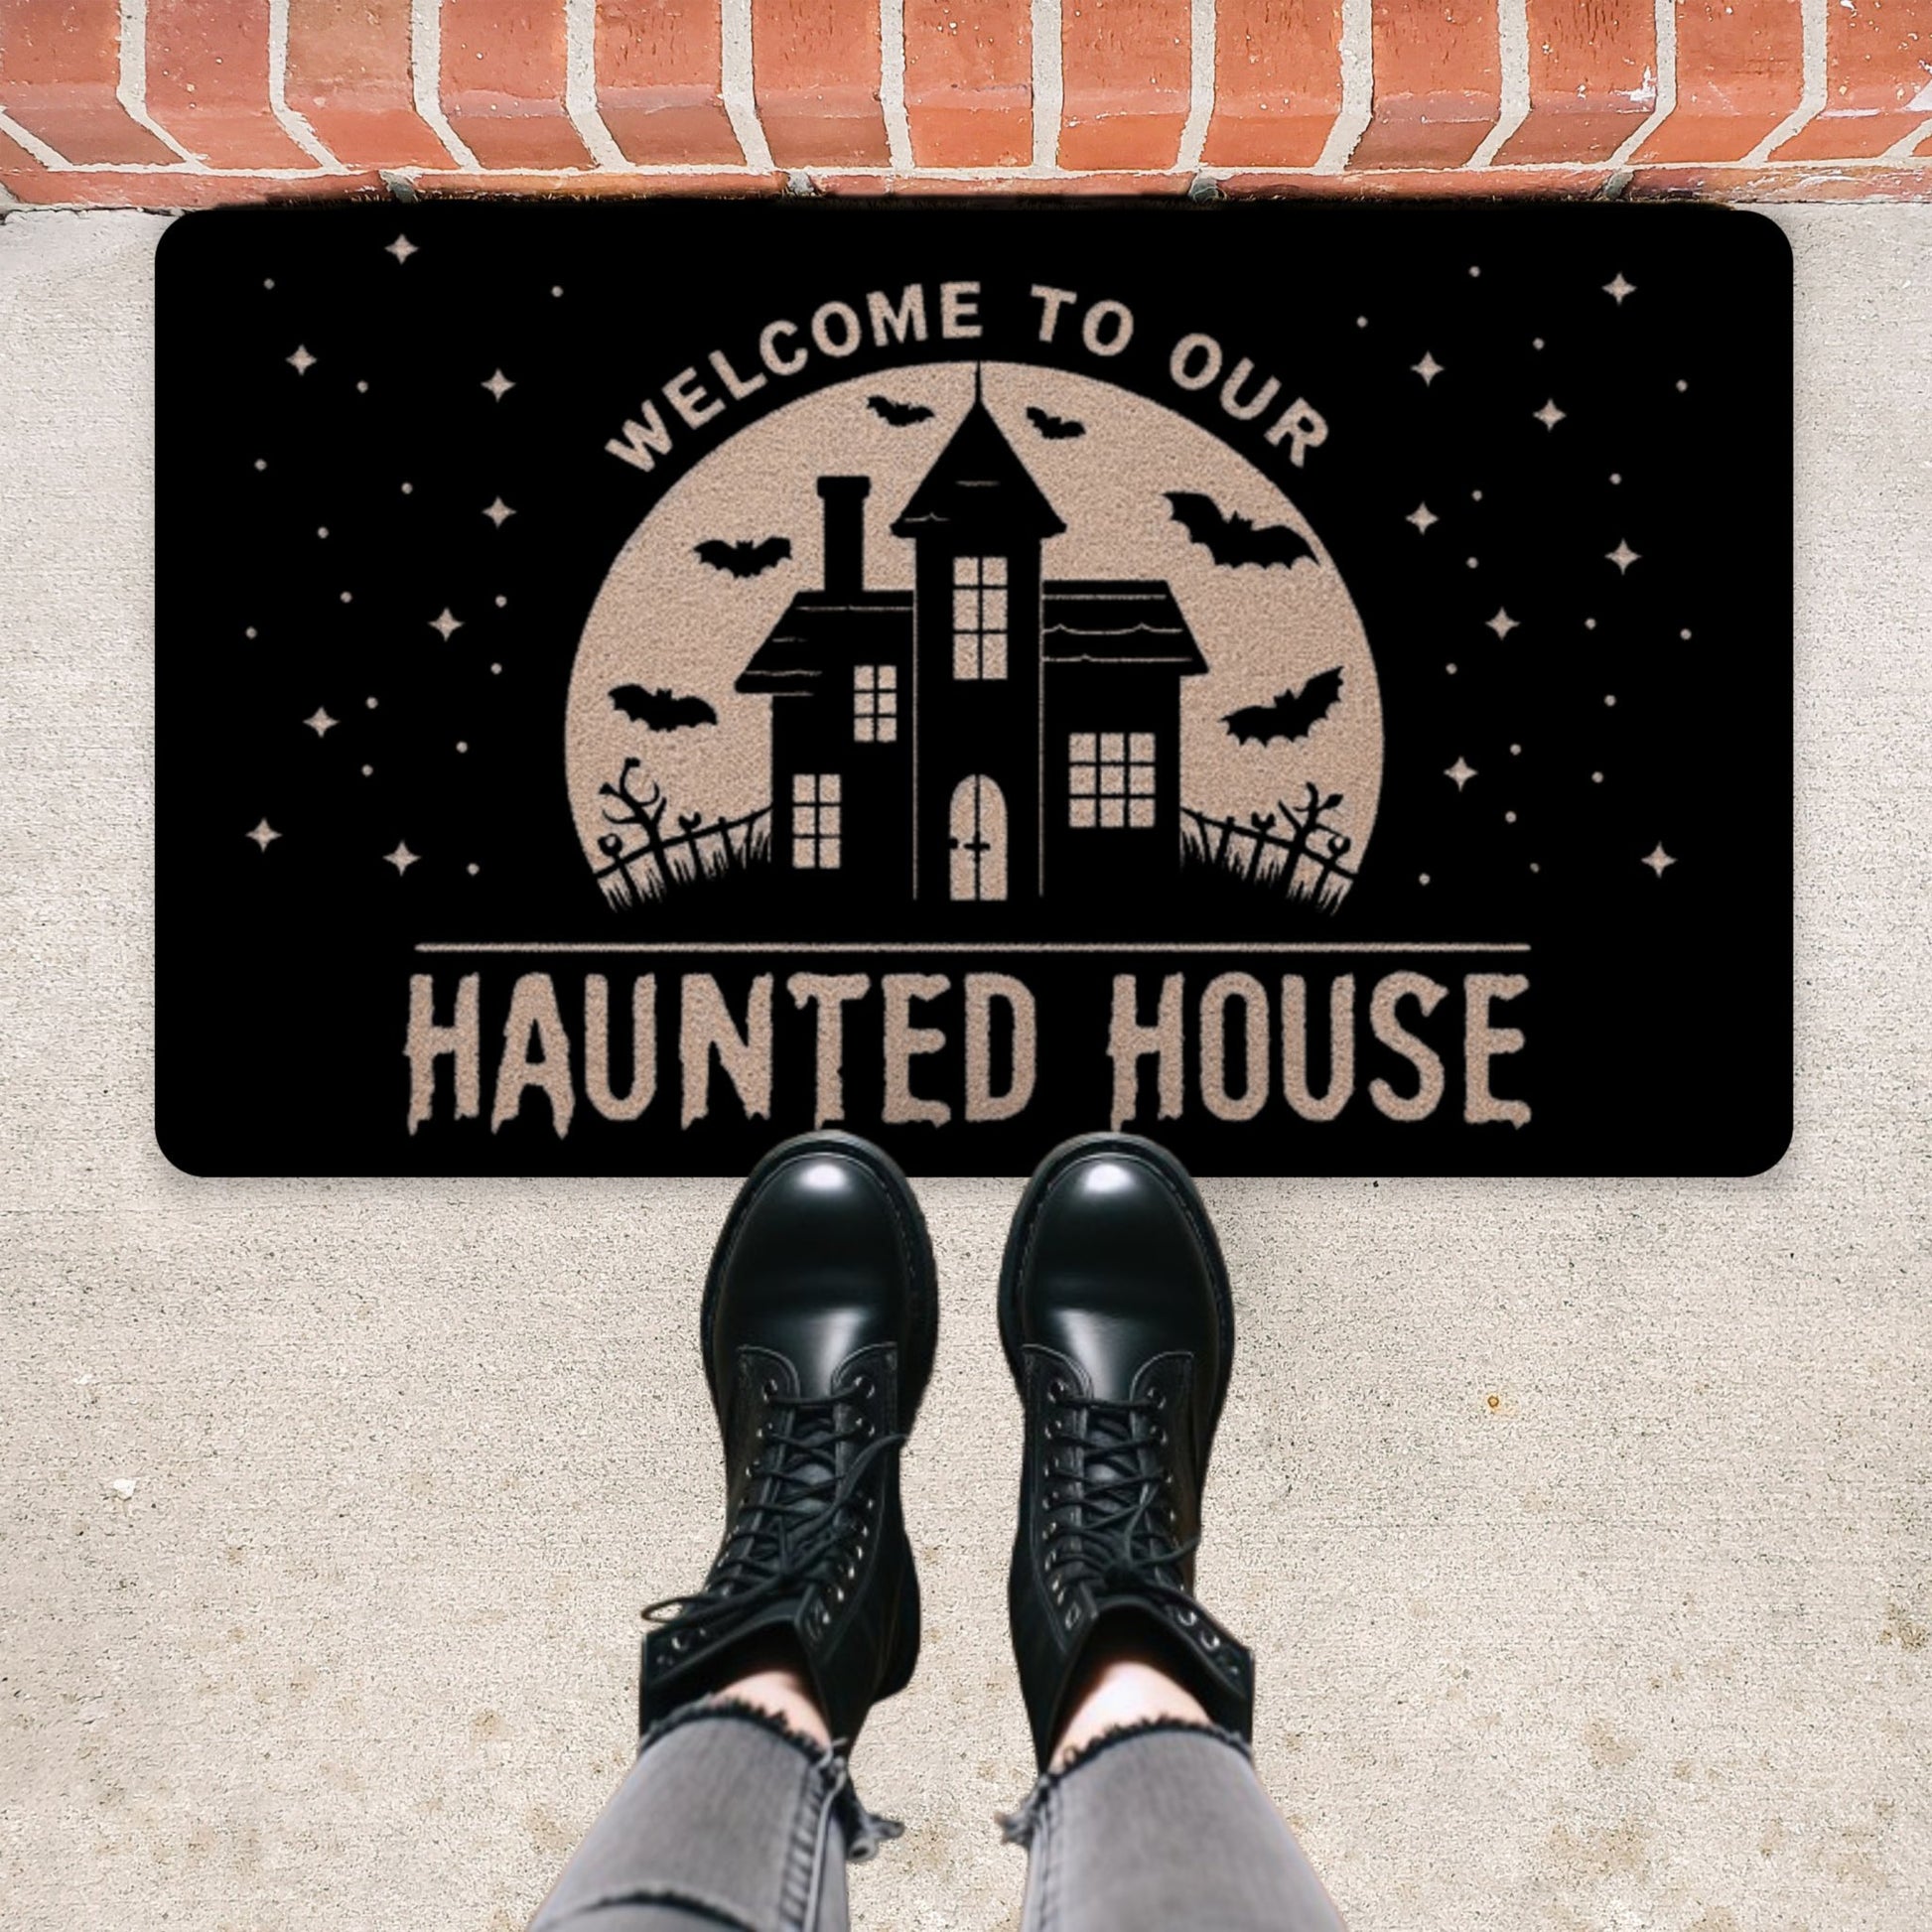 Welcome to Our Haunted House Rubber DoormatVTZdesigns30x18Whitebatscreepydoor mat